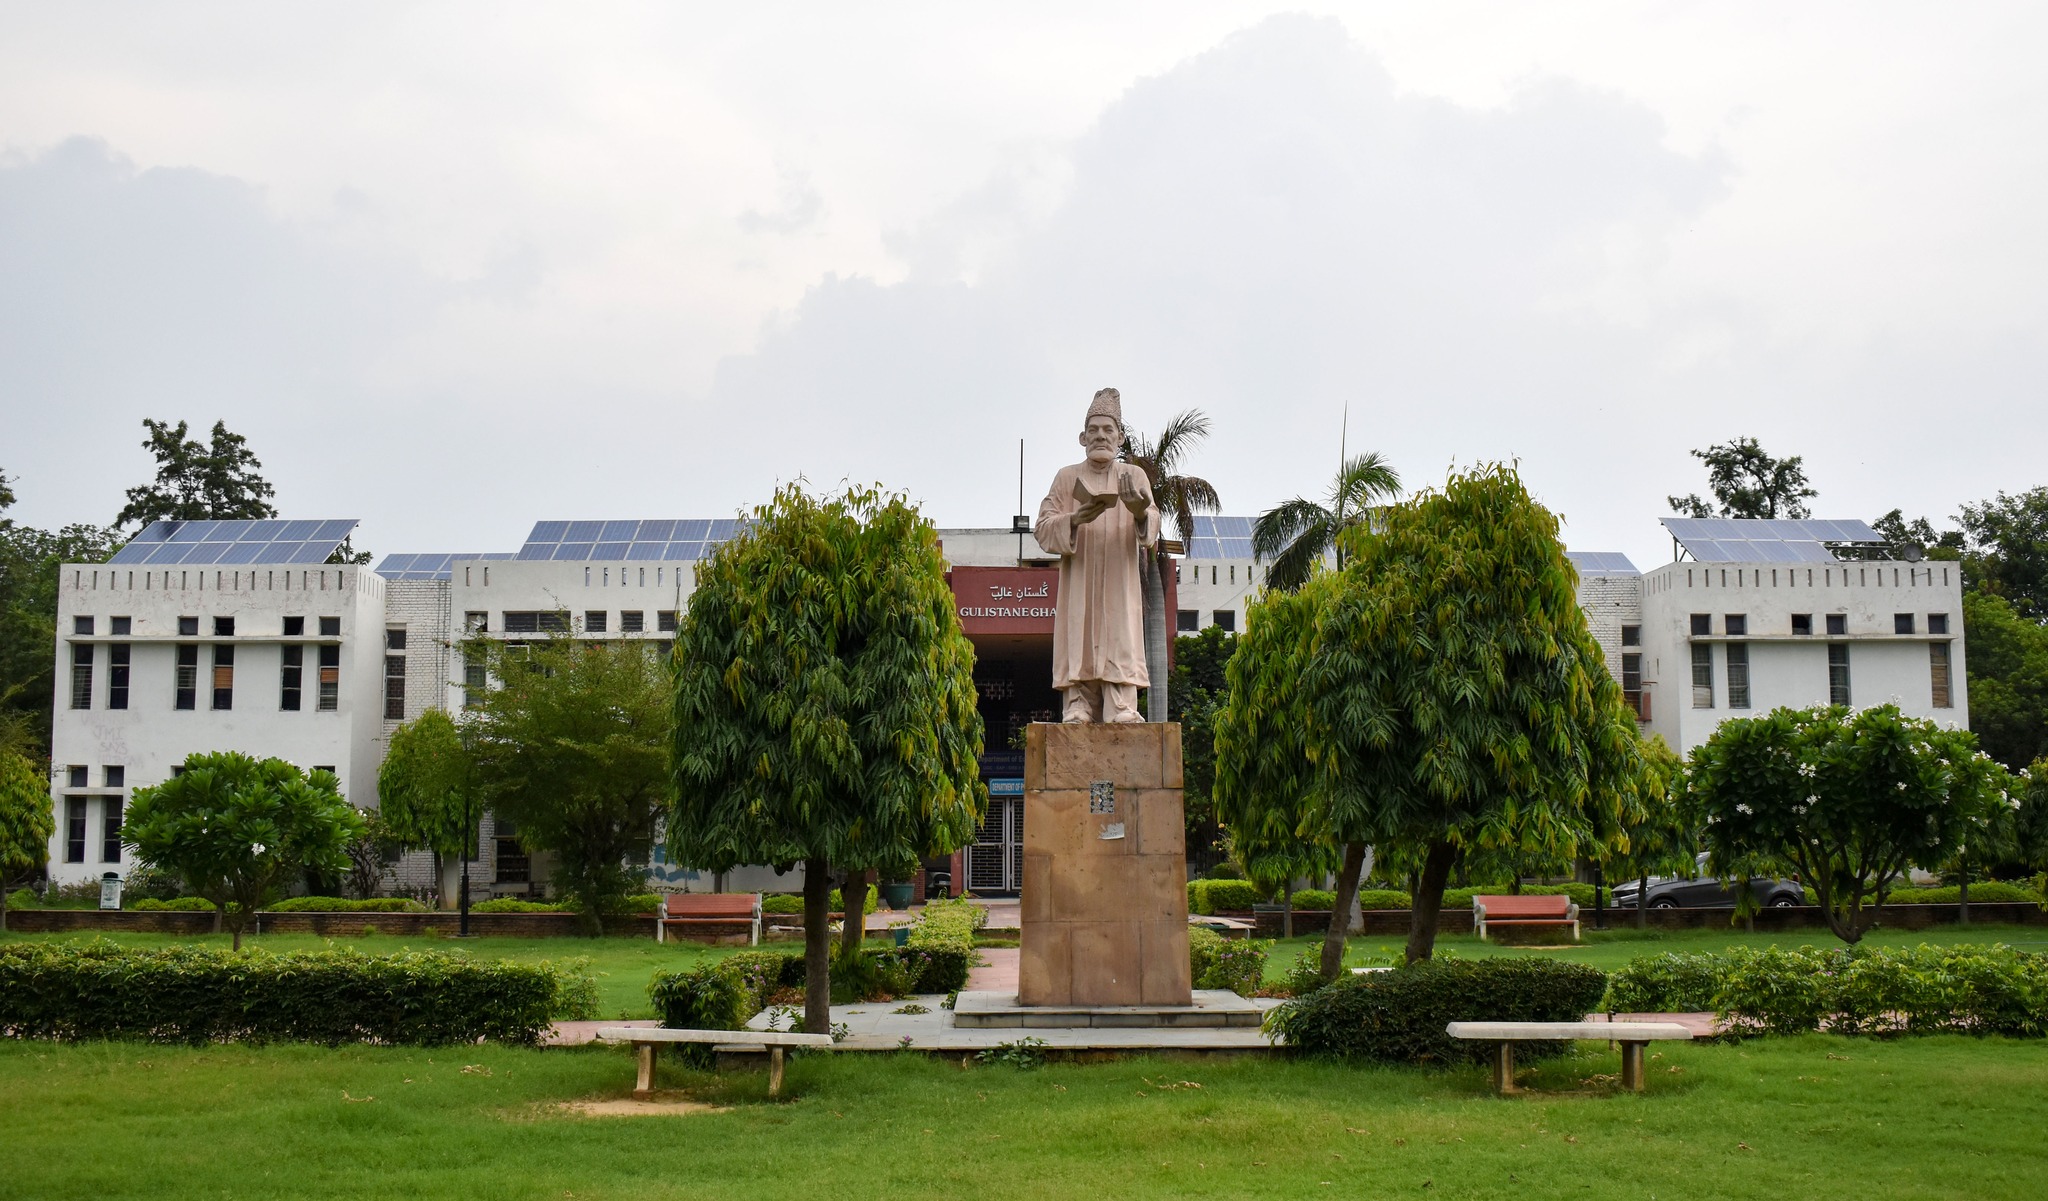 جامعہ ملیہ اسلامیہ میں مہارت اساس مختصر مدتی کورسیز کا آغاز